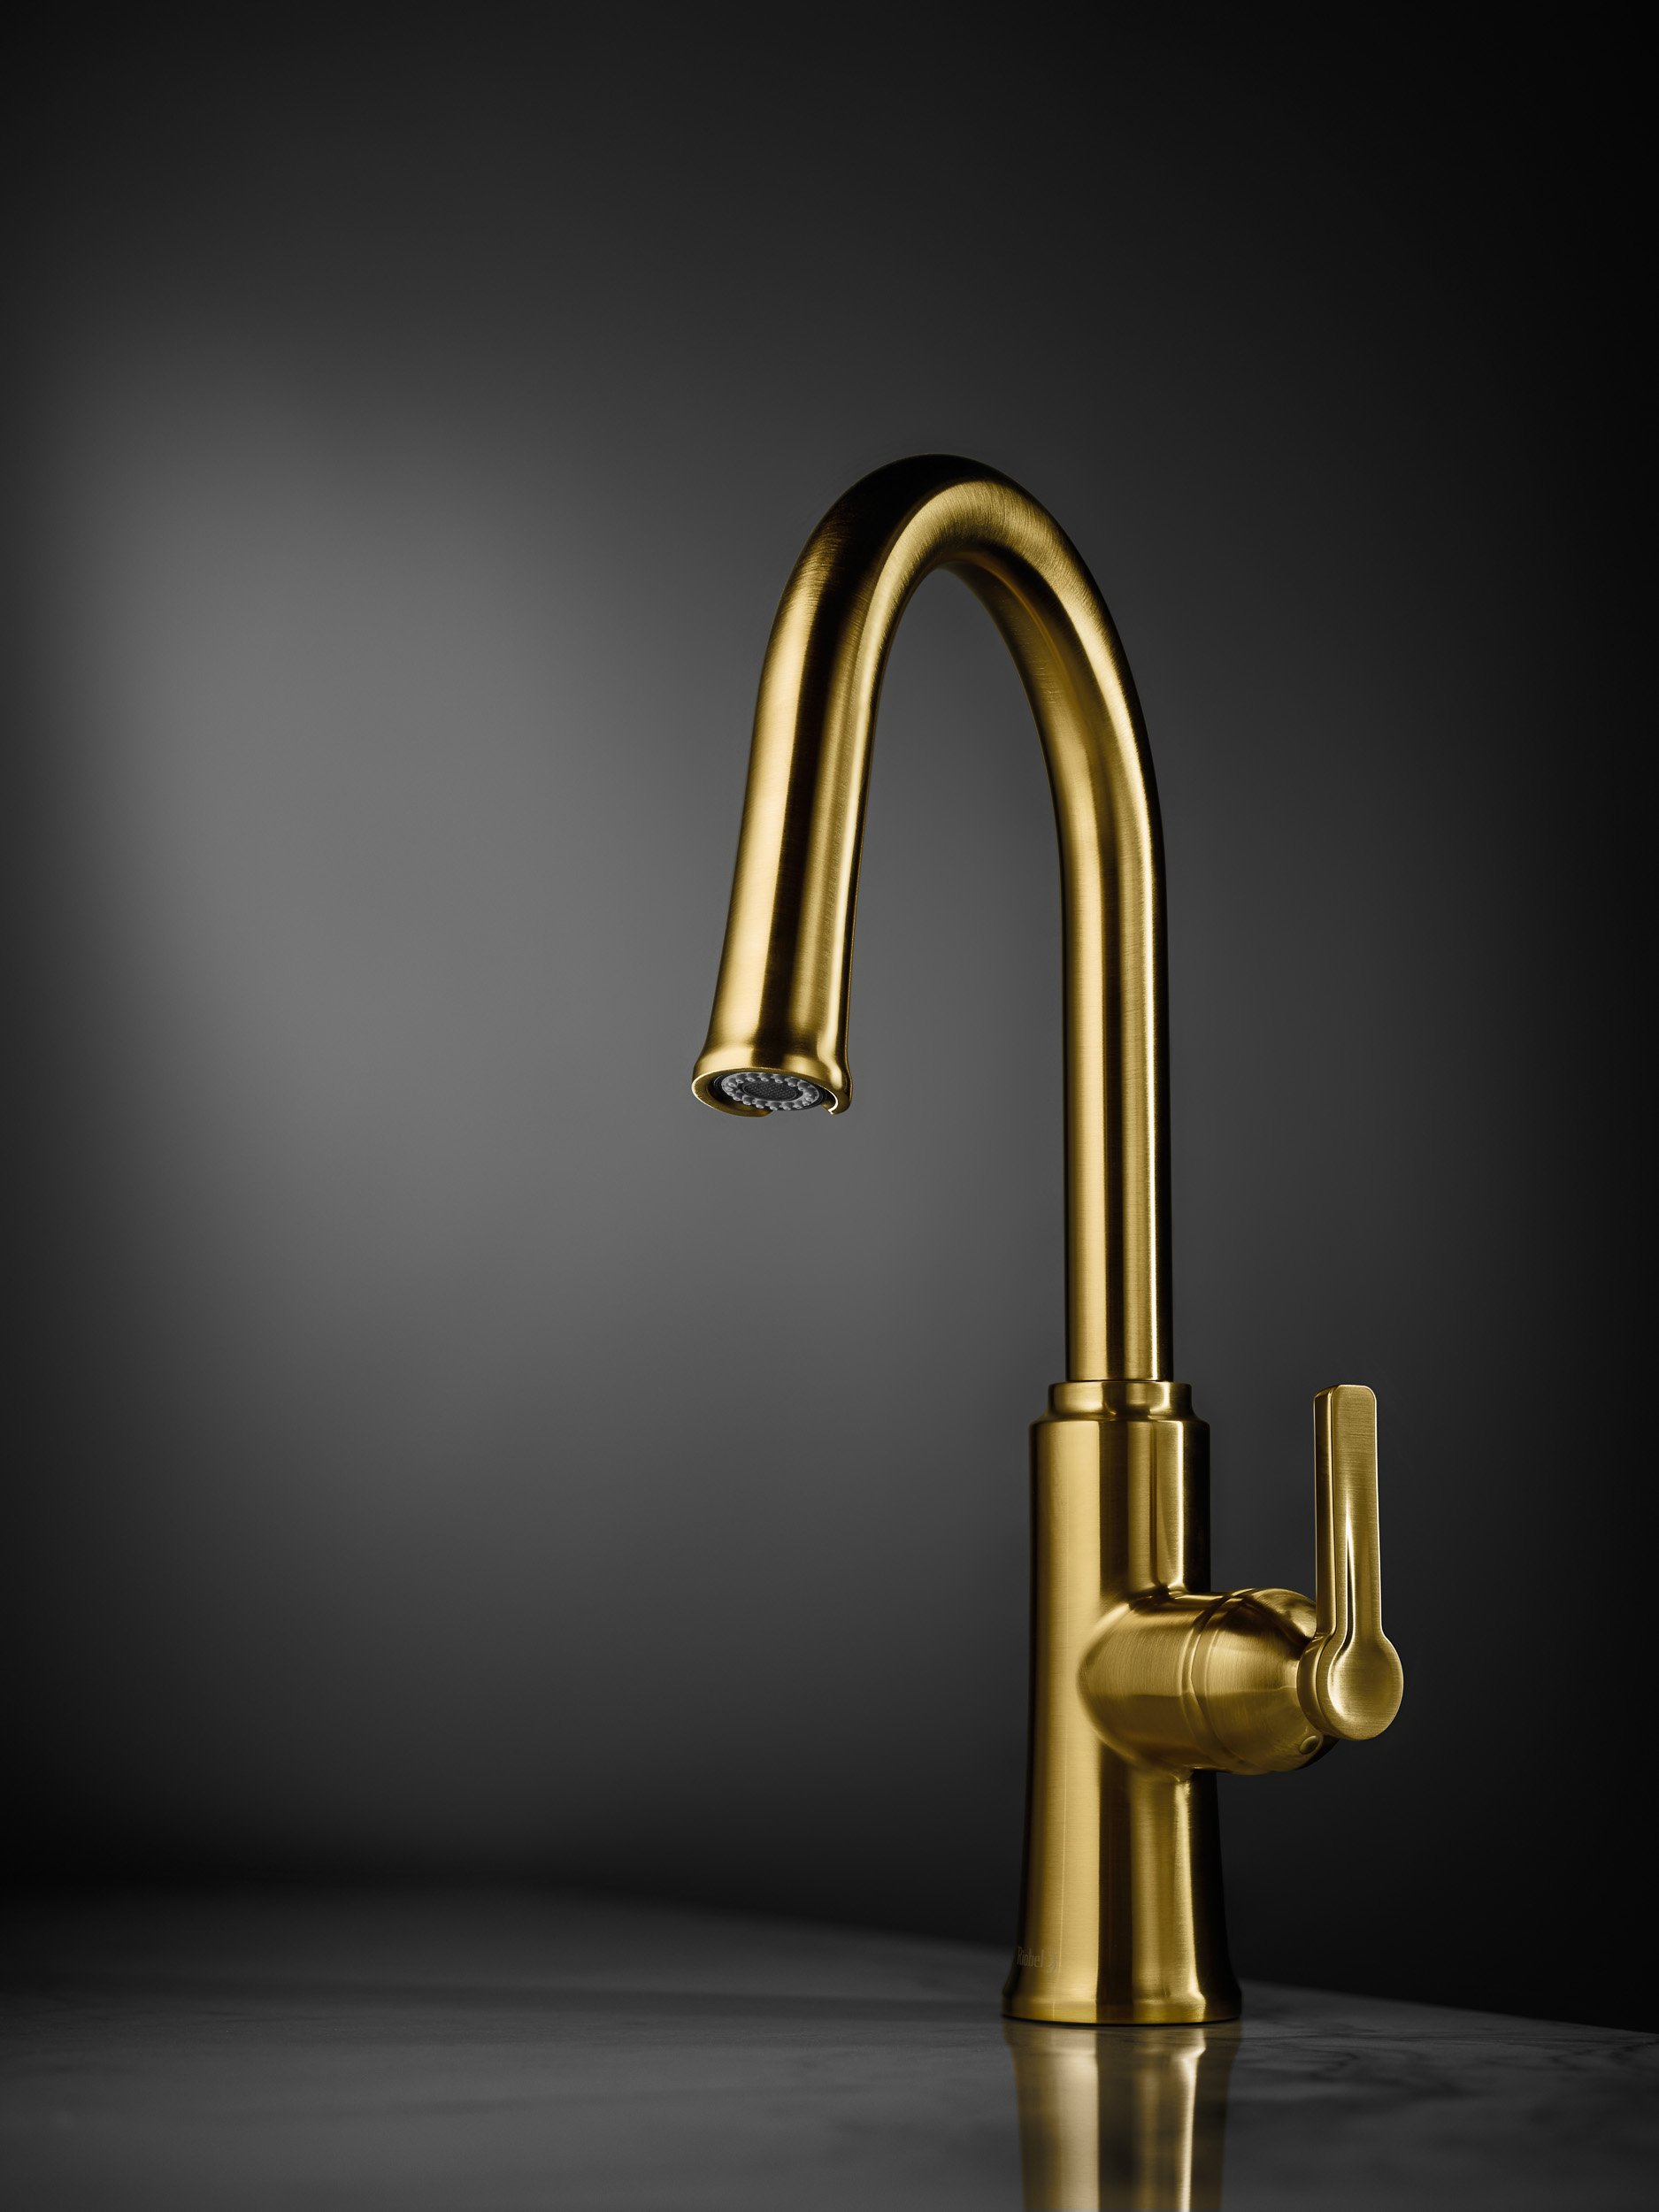 Golden faucet